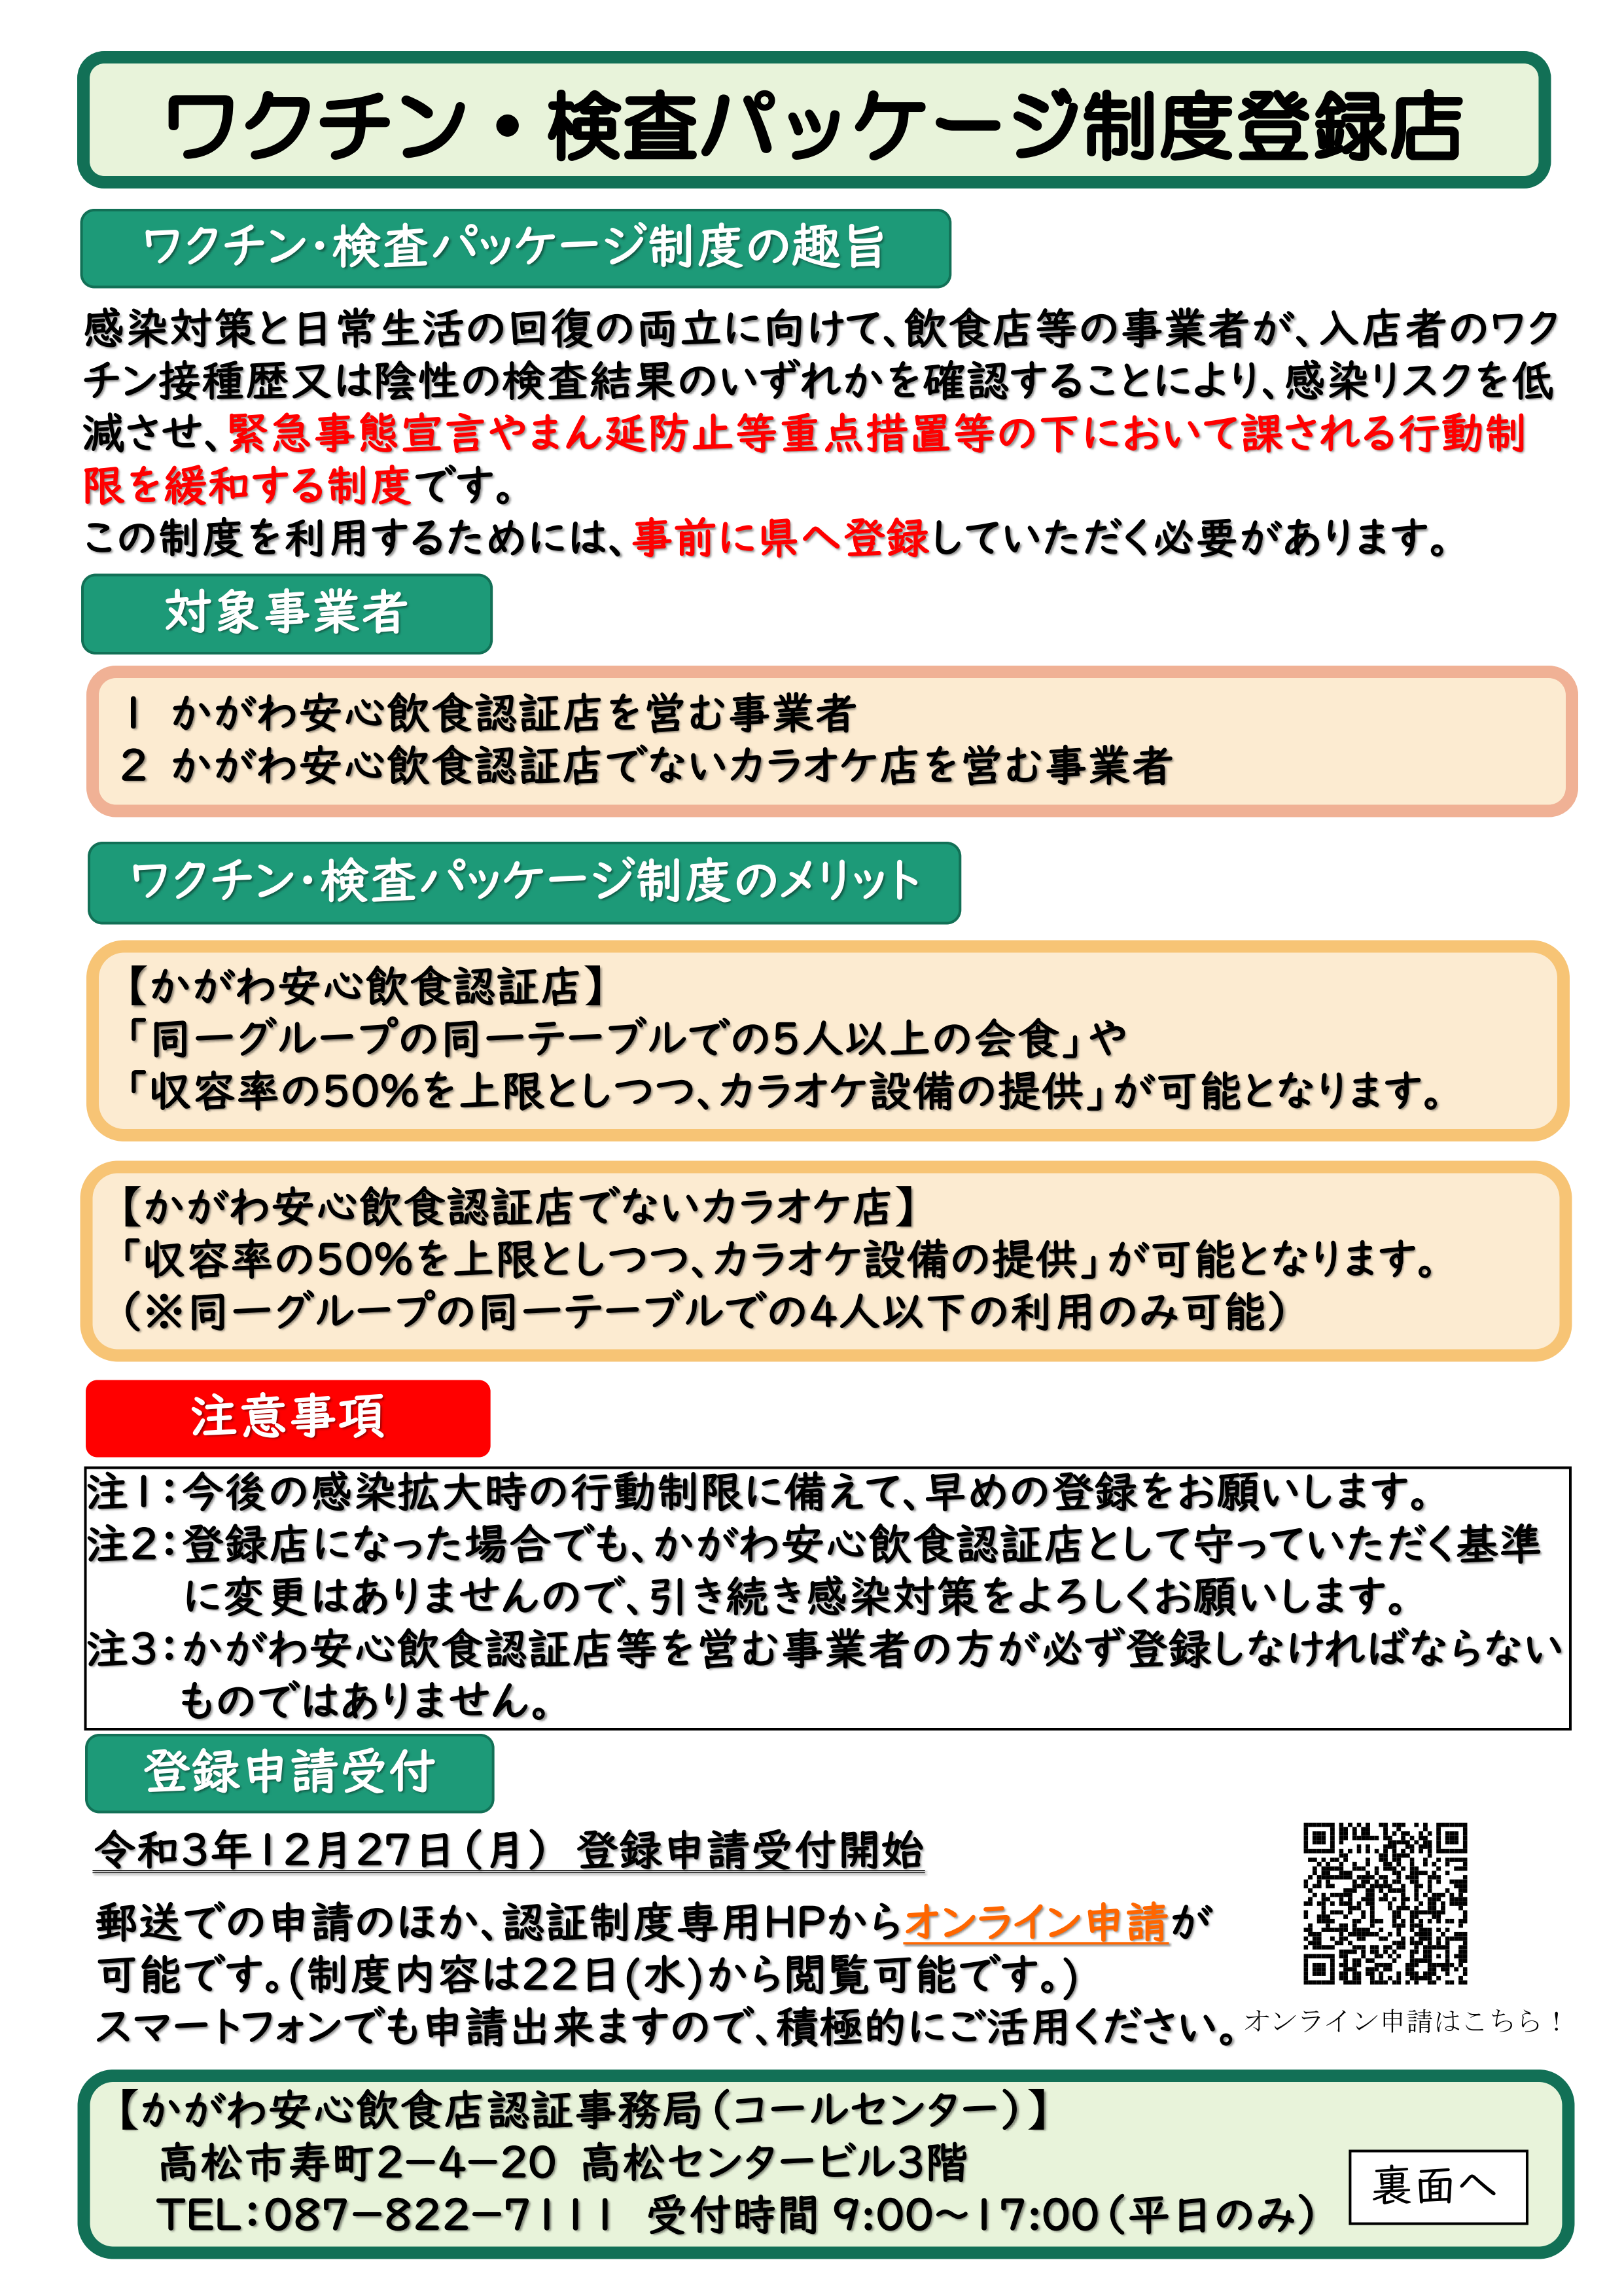 「ワクチン・検査パッケージ制度登録店」について（香川県）